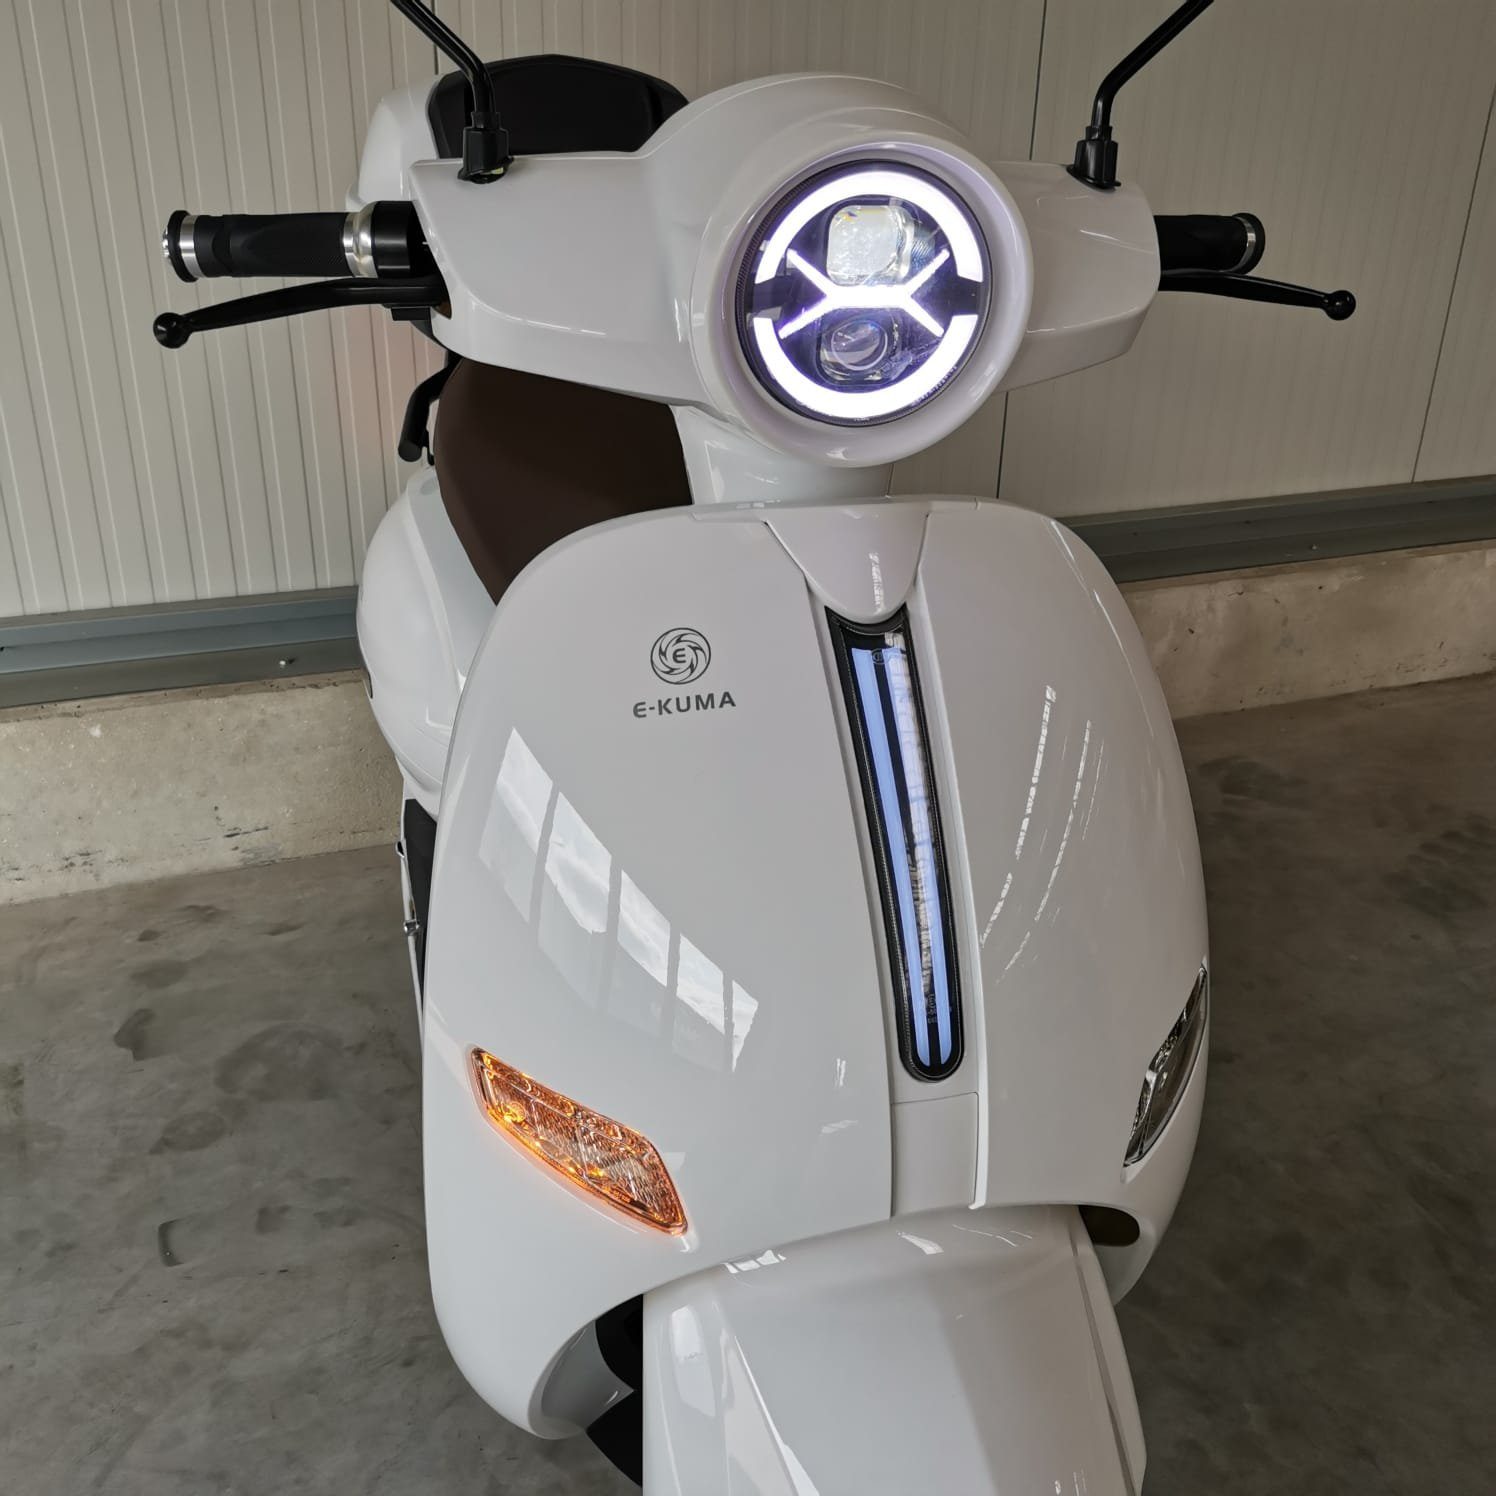 e-kuma E-Motorroller Sun-S+, 90 mattschwarz W, km/h, 8000,00 Topcase inklusive